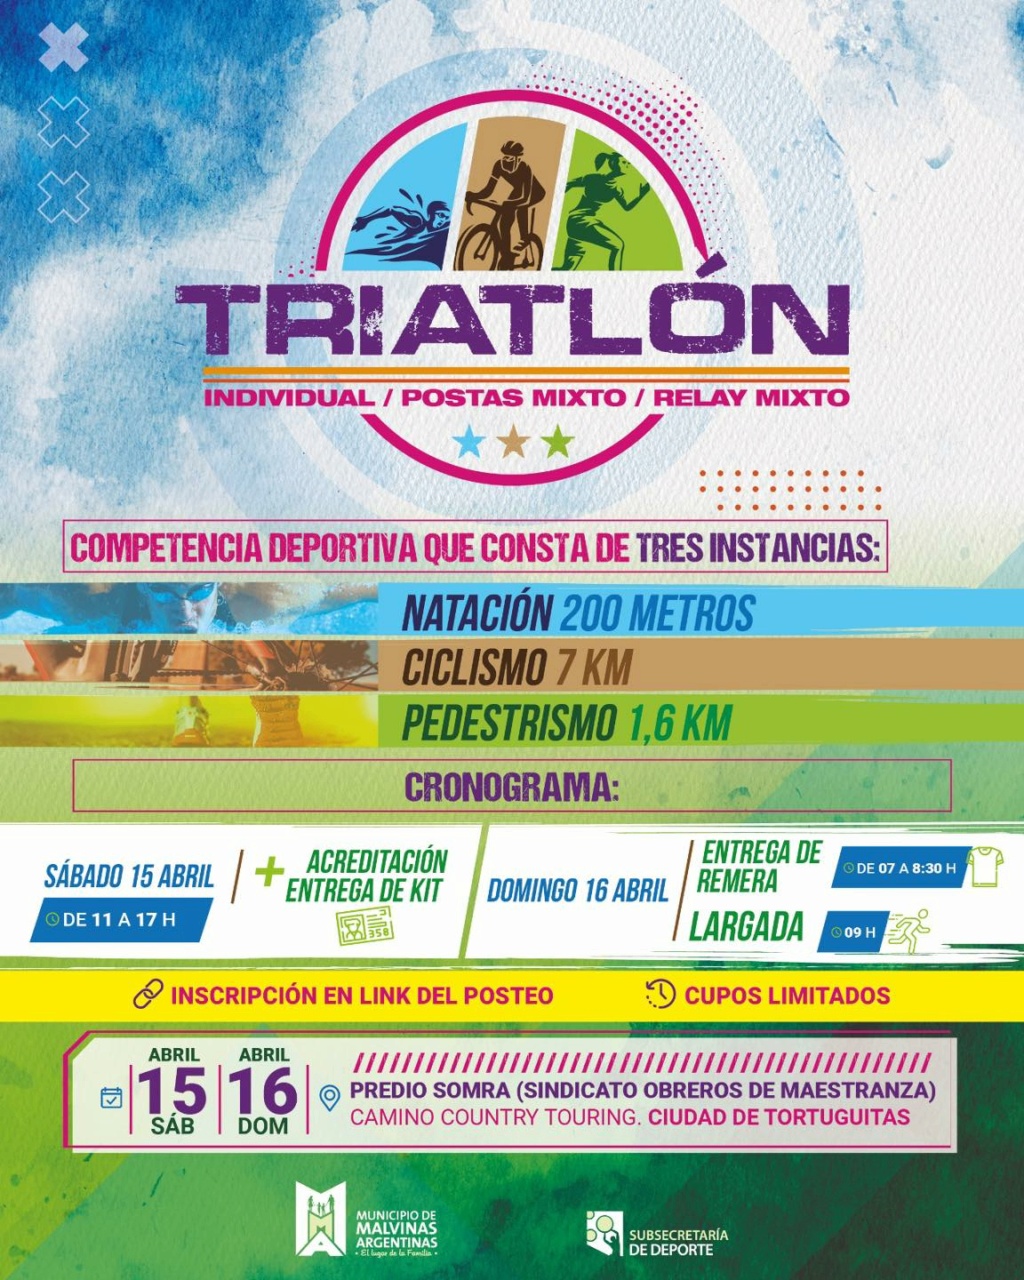 Malvinas Argentinas: competencia deportiva “Triatlón”. 33702910